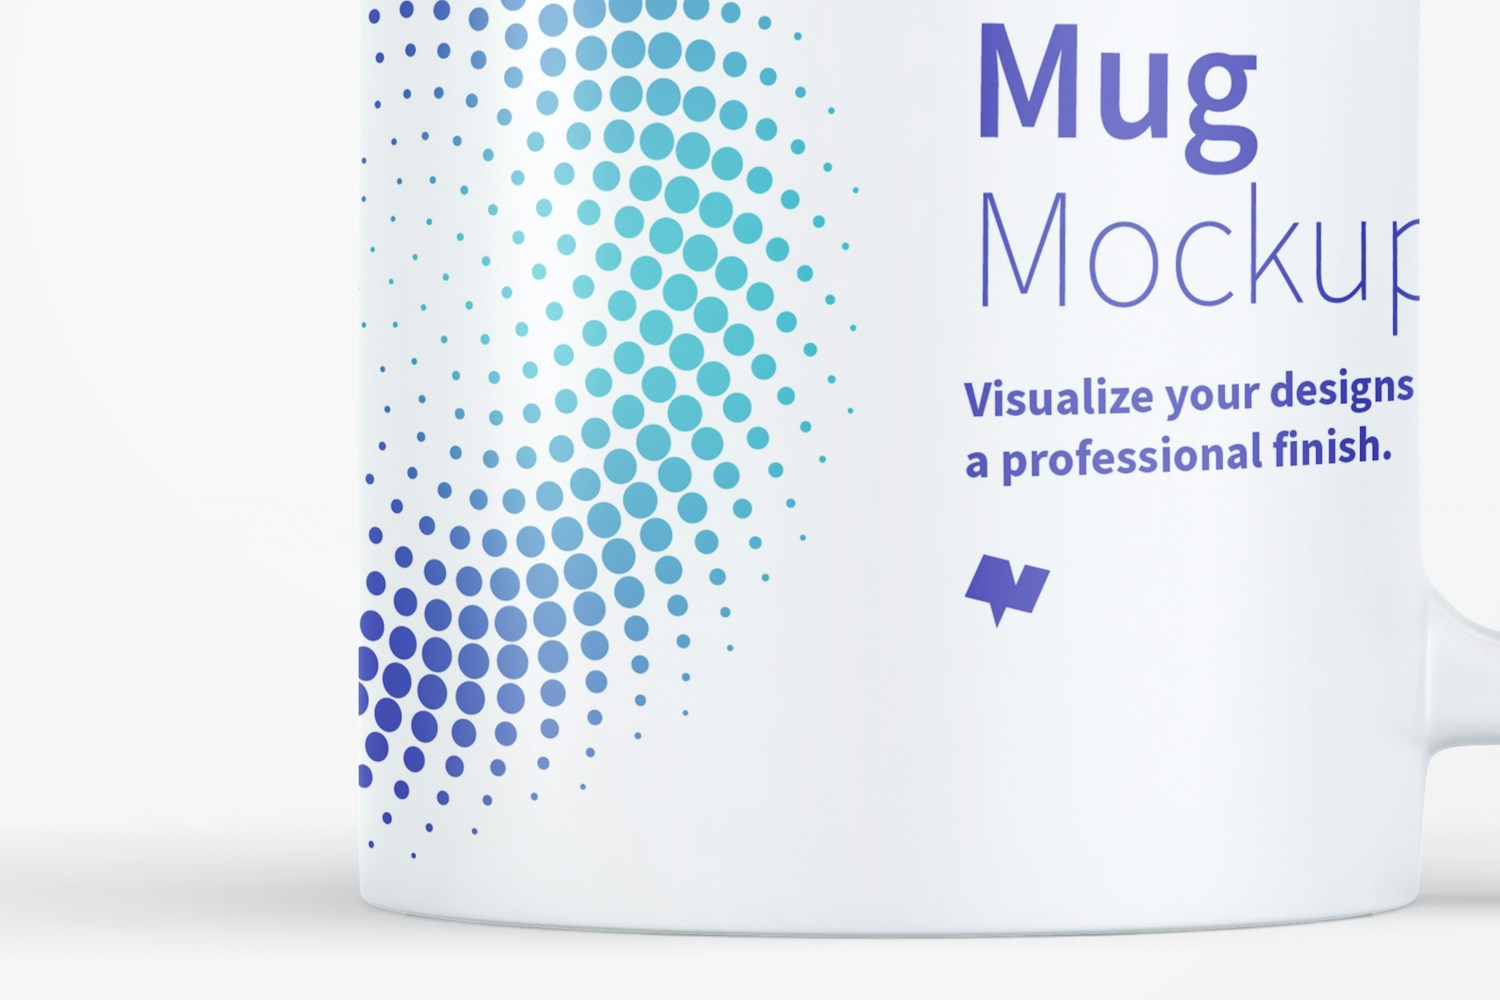 Mug Mockup 08